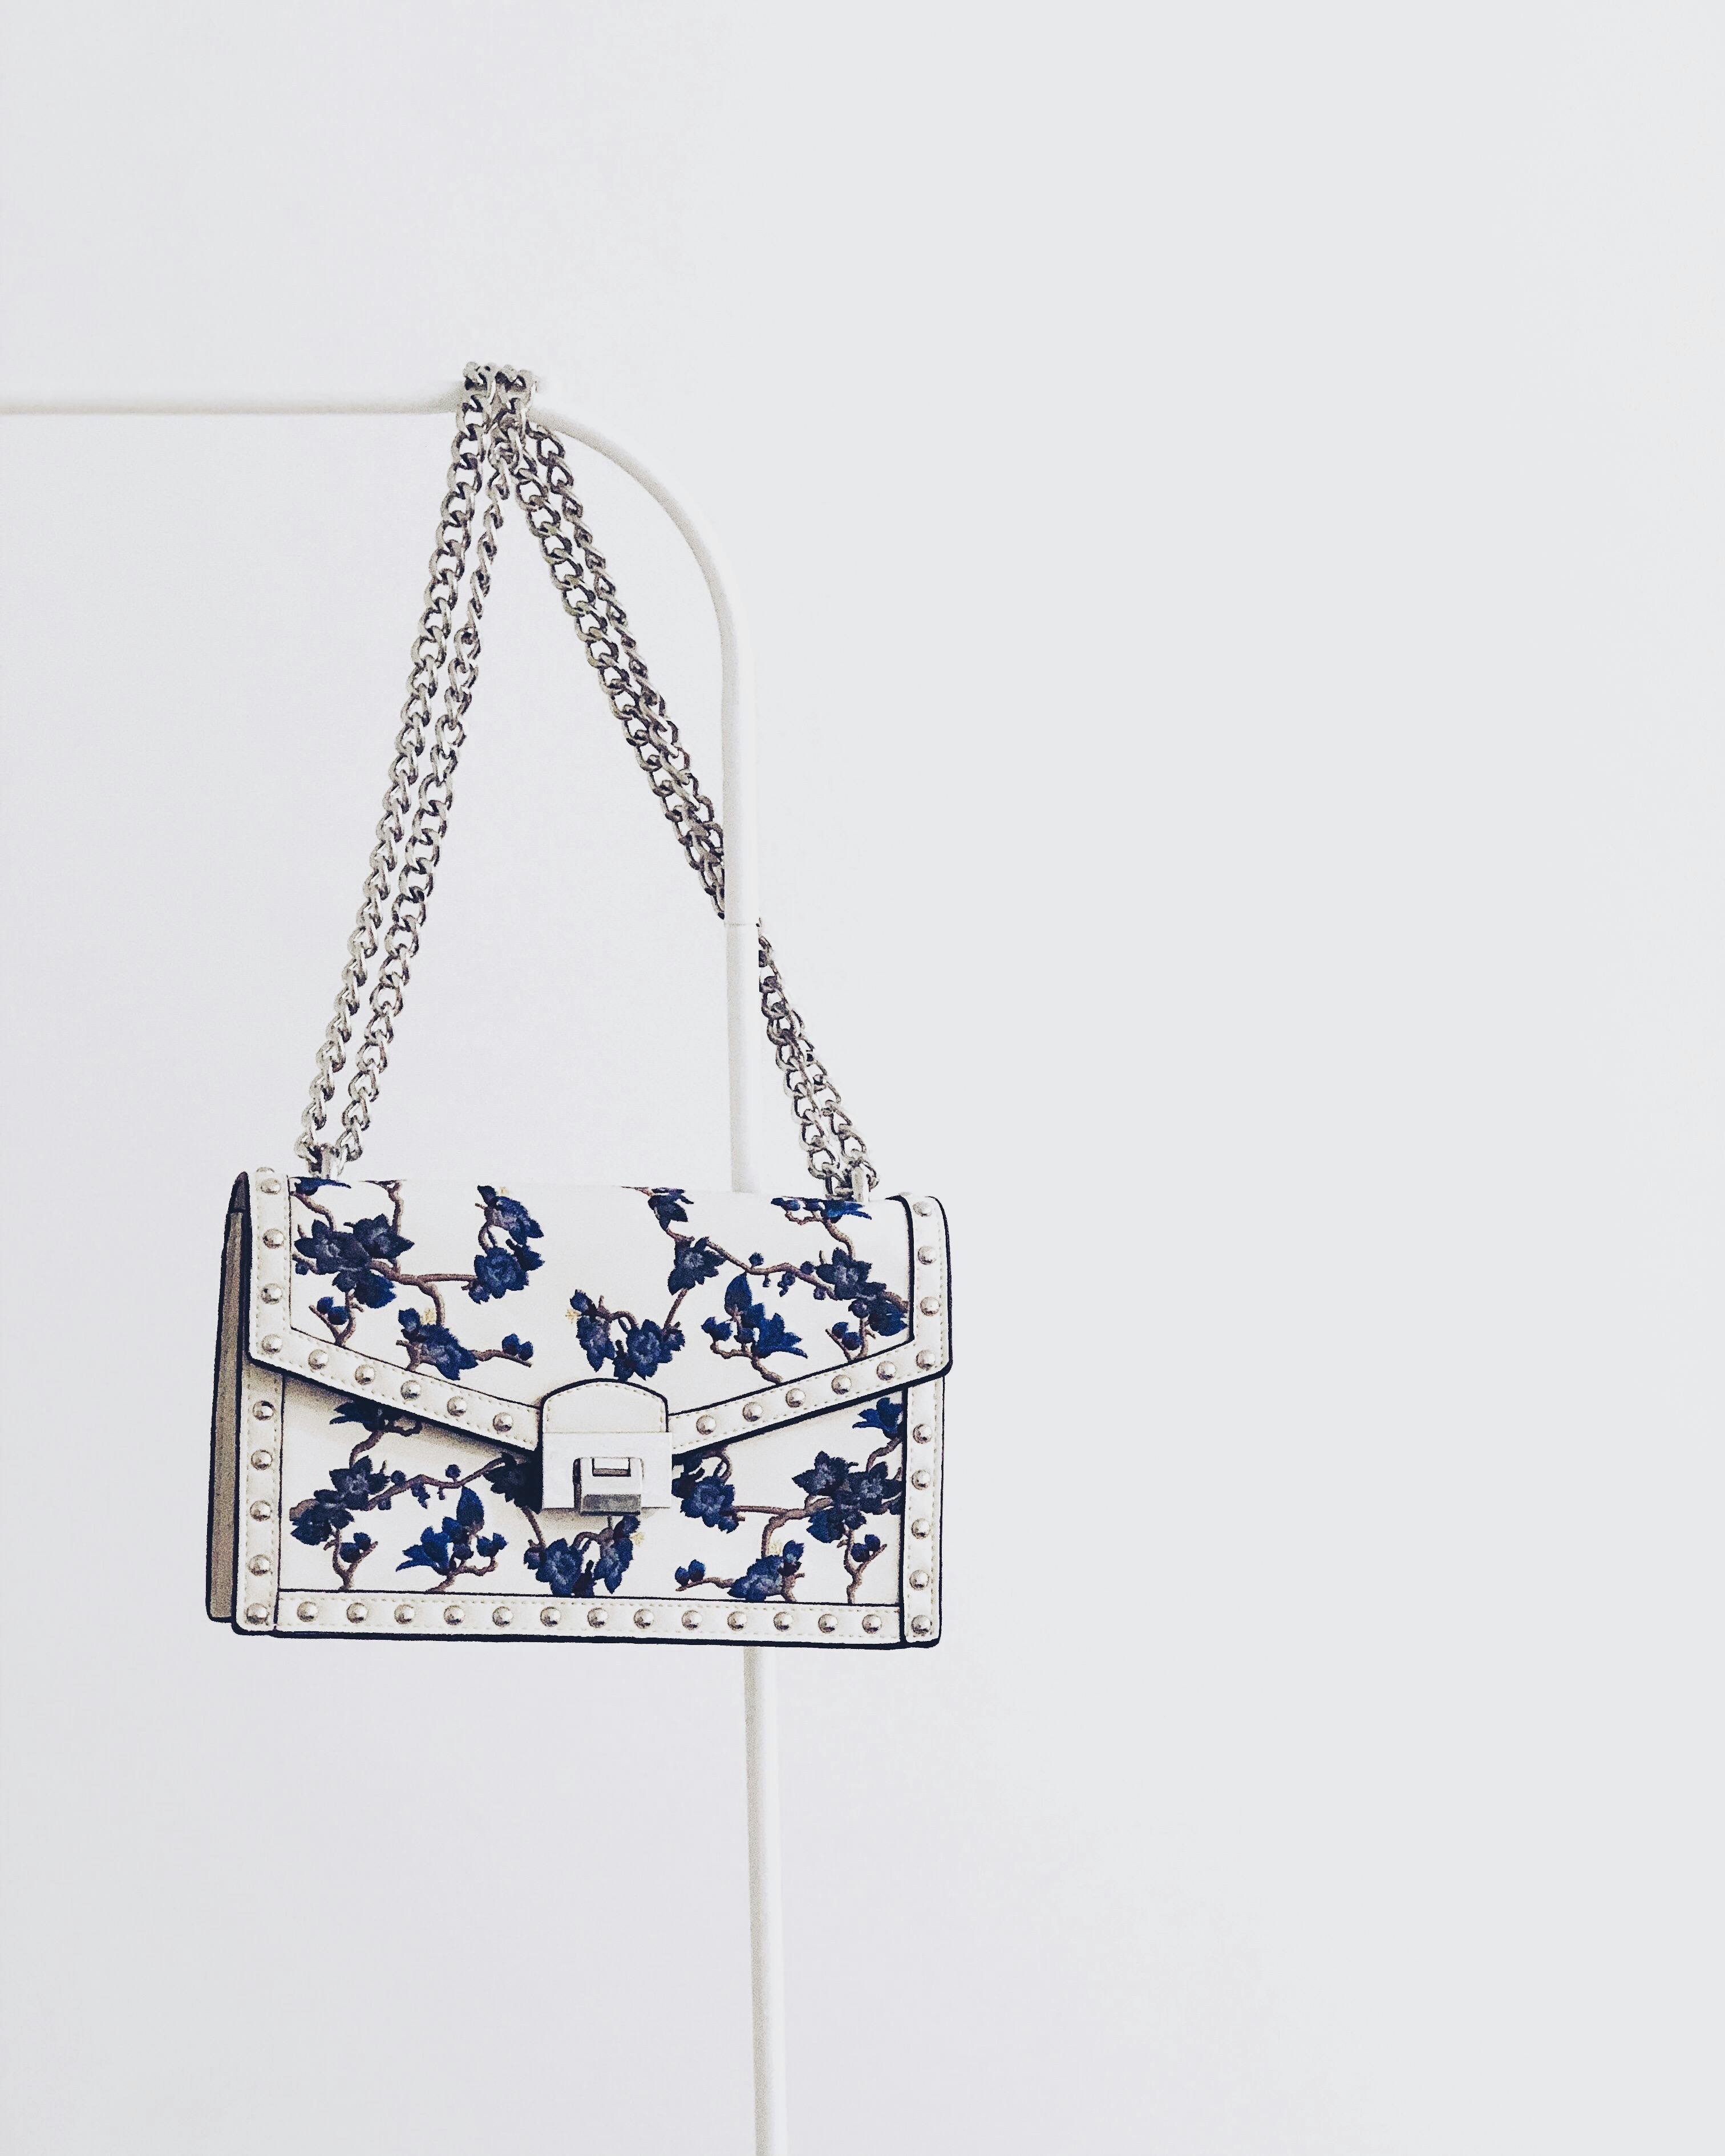 Eine Tasche mit blauen Details | Quelle: Pexels